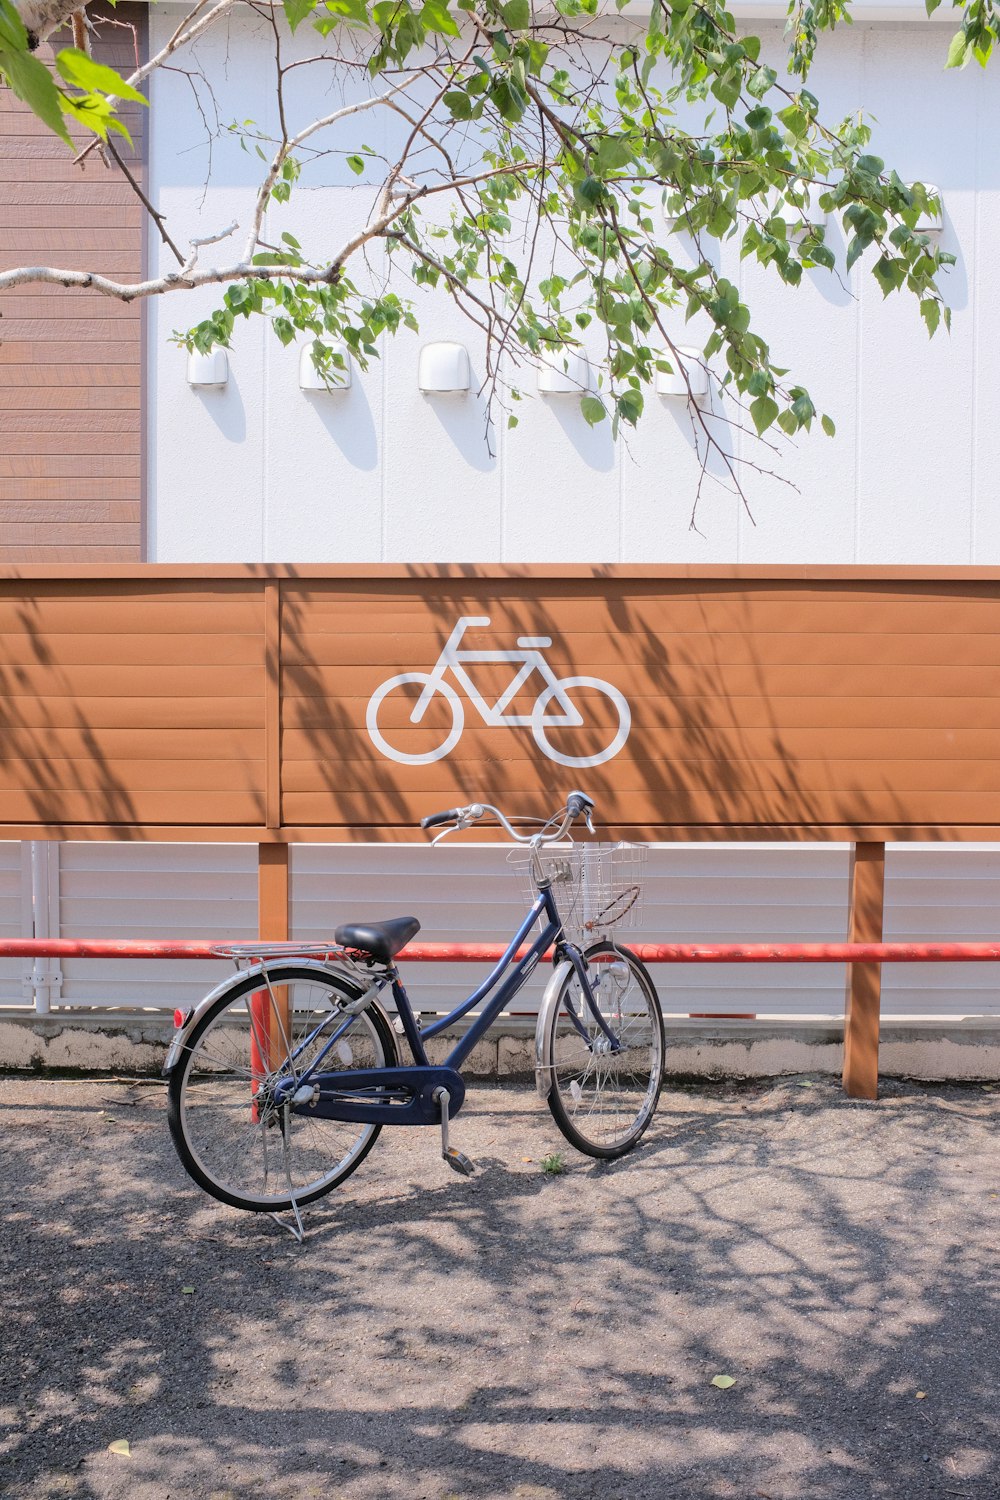 bici da città nera parcheggiata accanto a una panchina di legno marrone